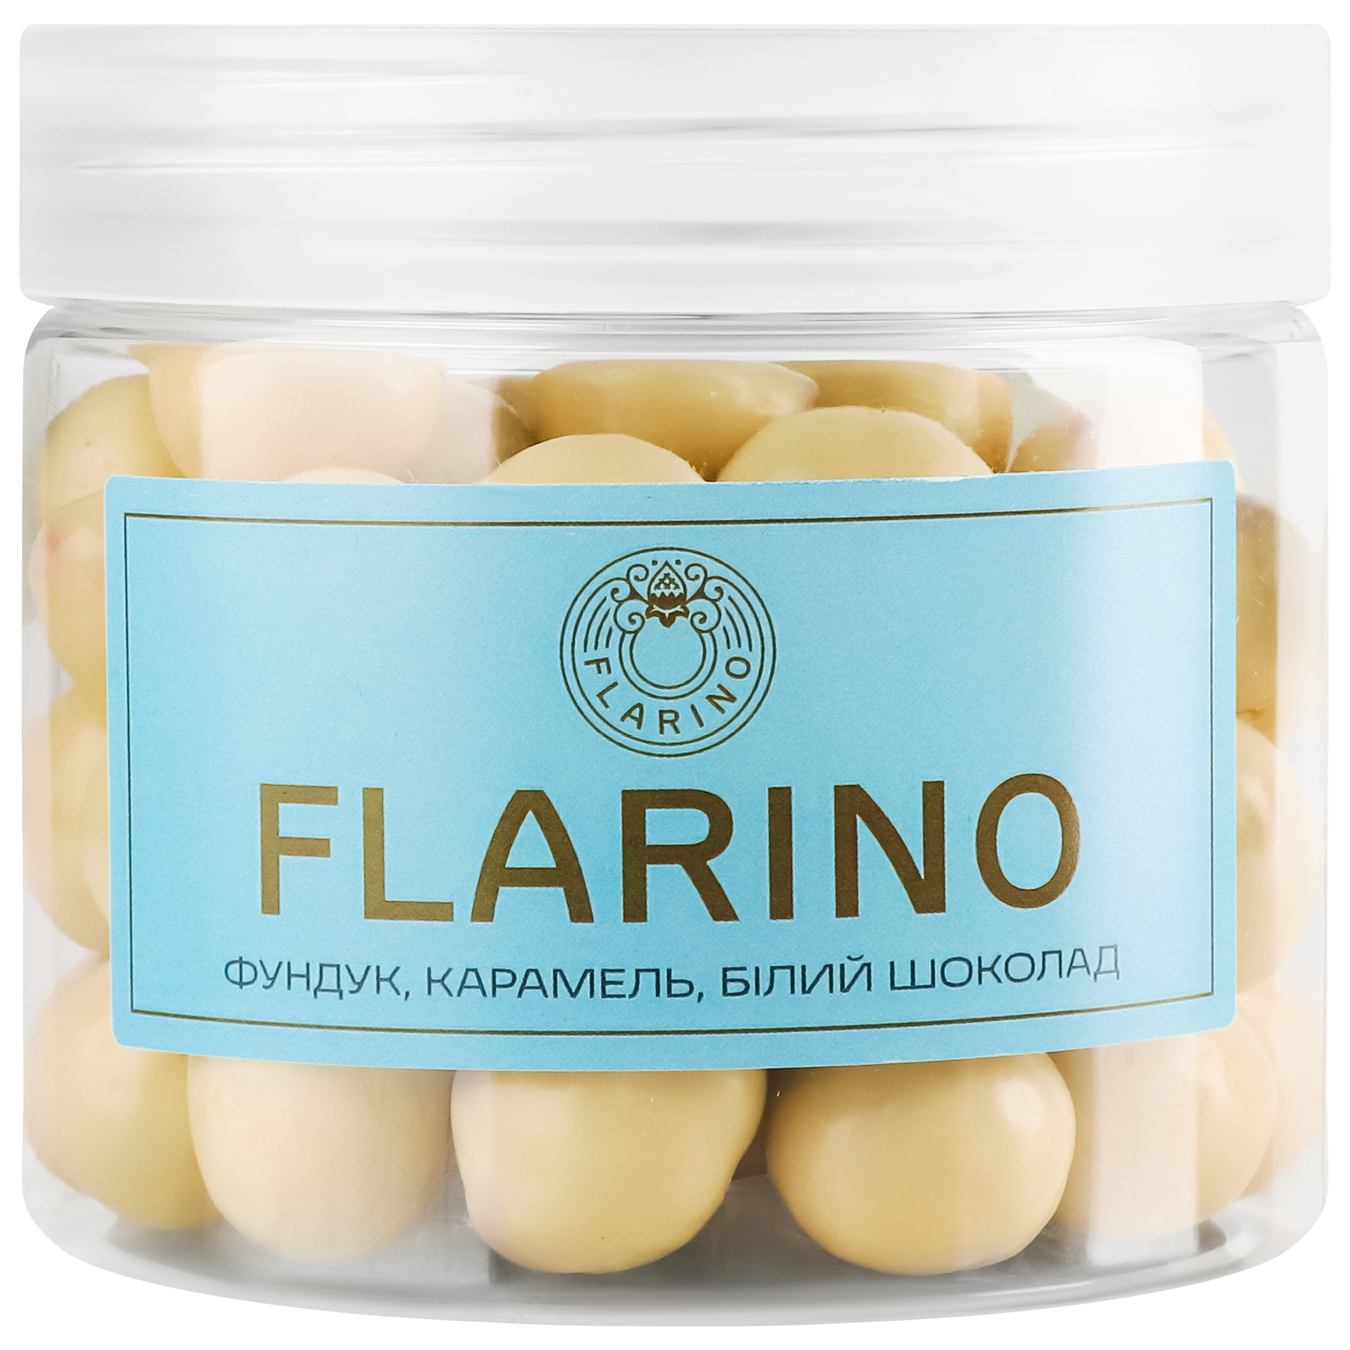 Фундук Flarino в карамеле покрыт белым шоколадом 180г.